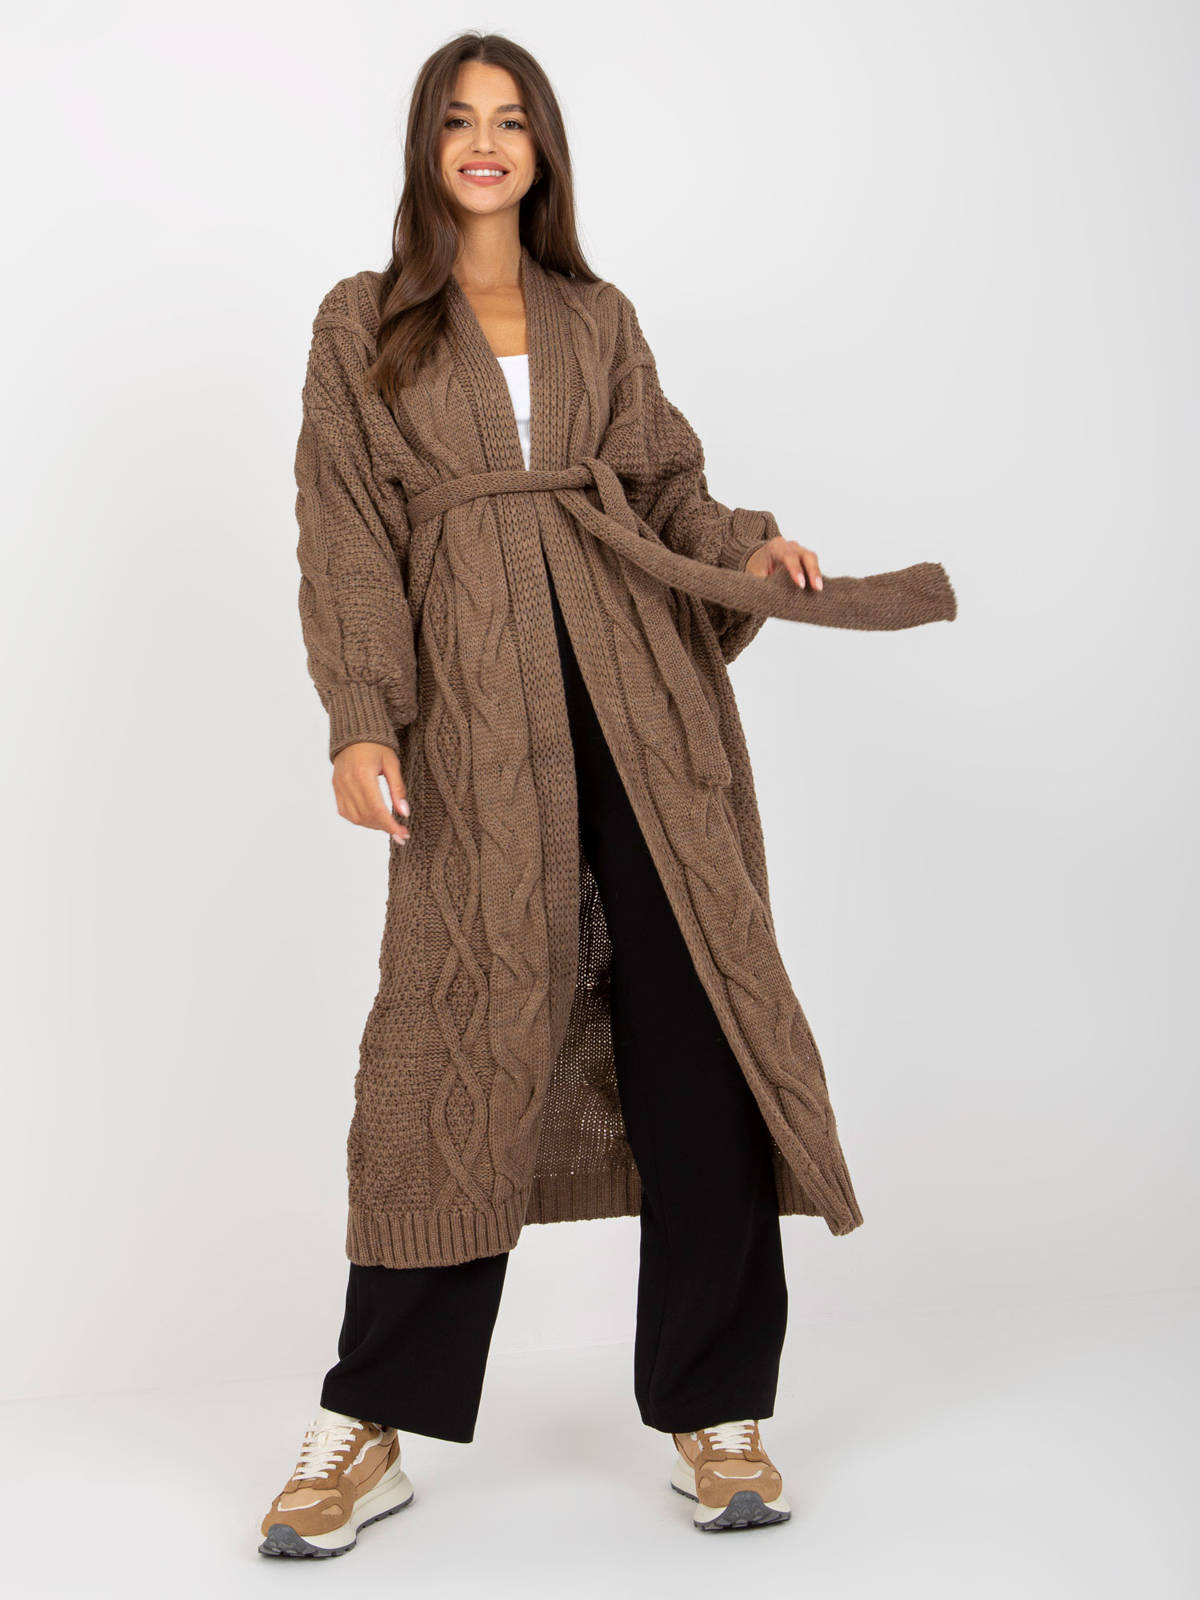 Sweter kardigan brązowy casual narzutka dekolt w kształcie V rękaw długi długość długa pasek wiązanie